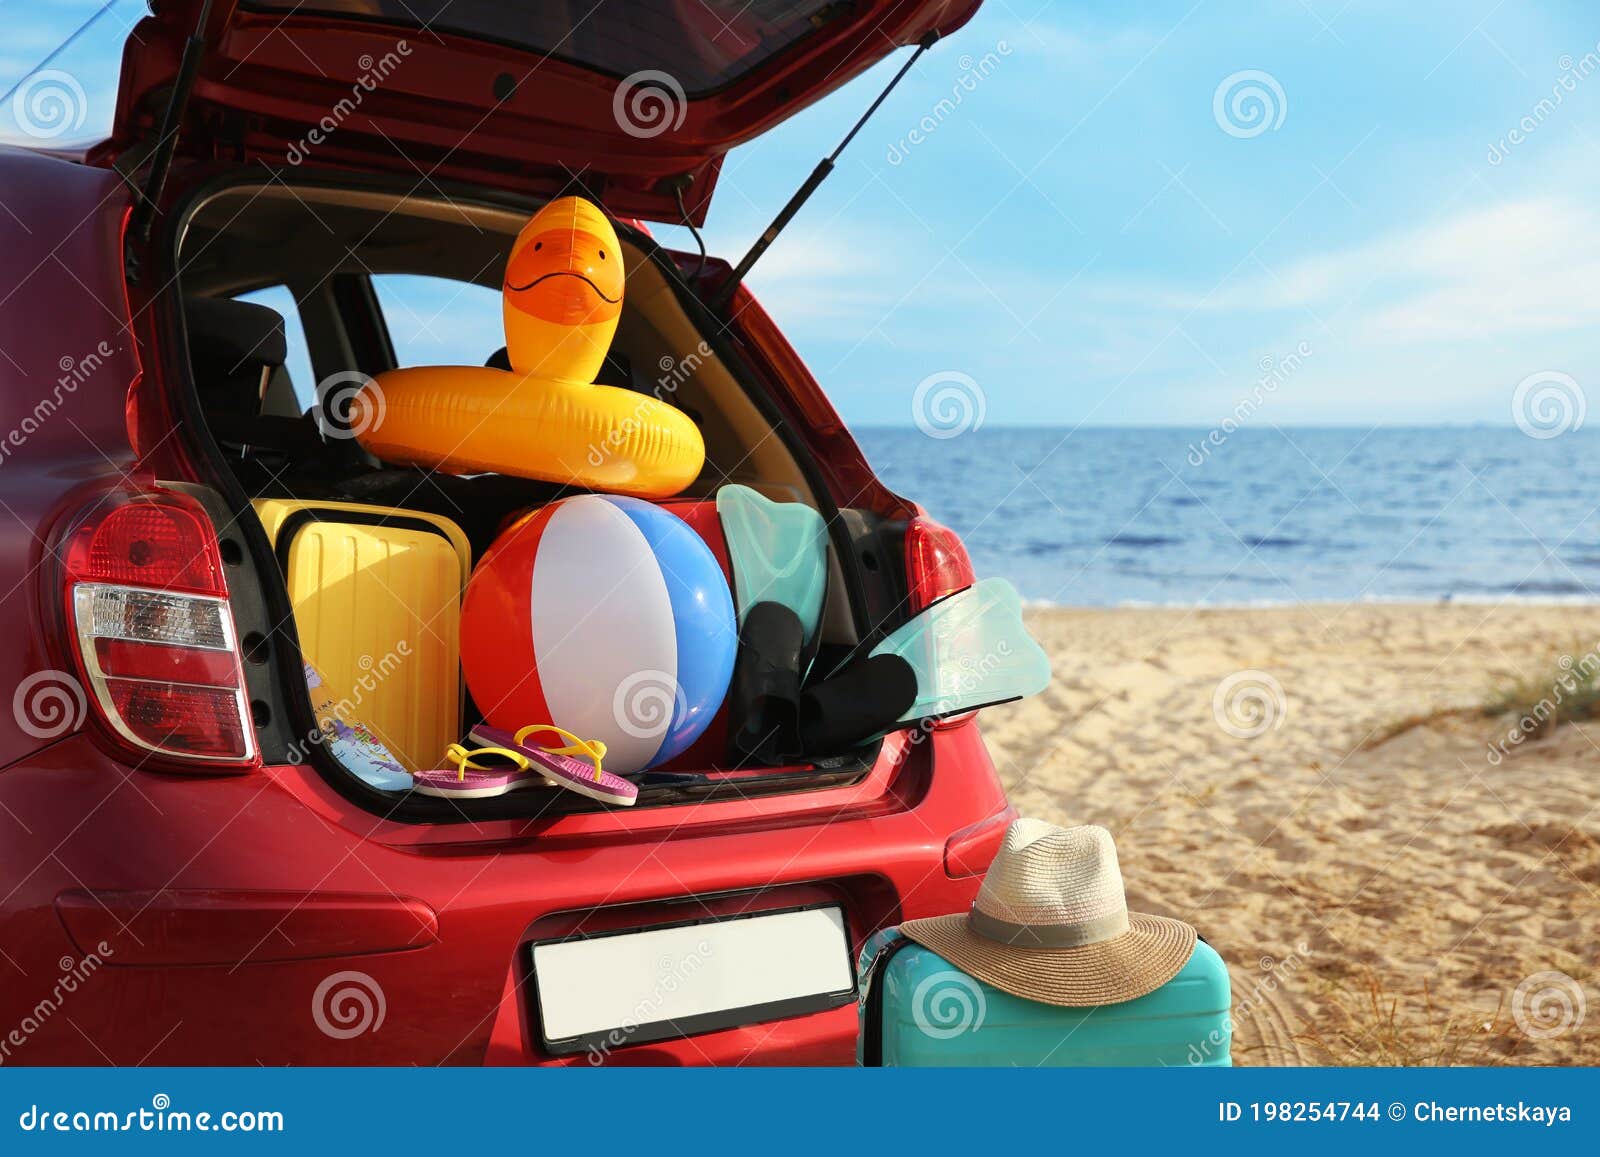 Rot Auto Mit Gepäck Auf Strand Sommerurlaubsreise Stockfoto - Bild